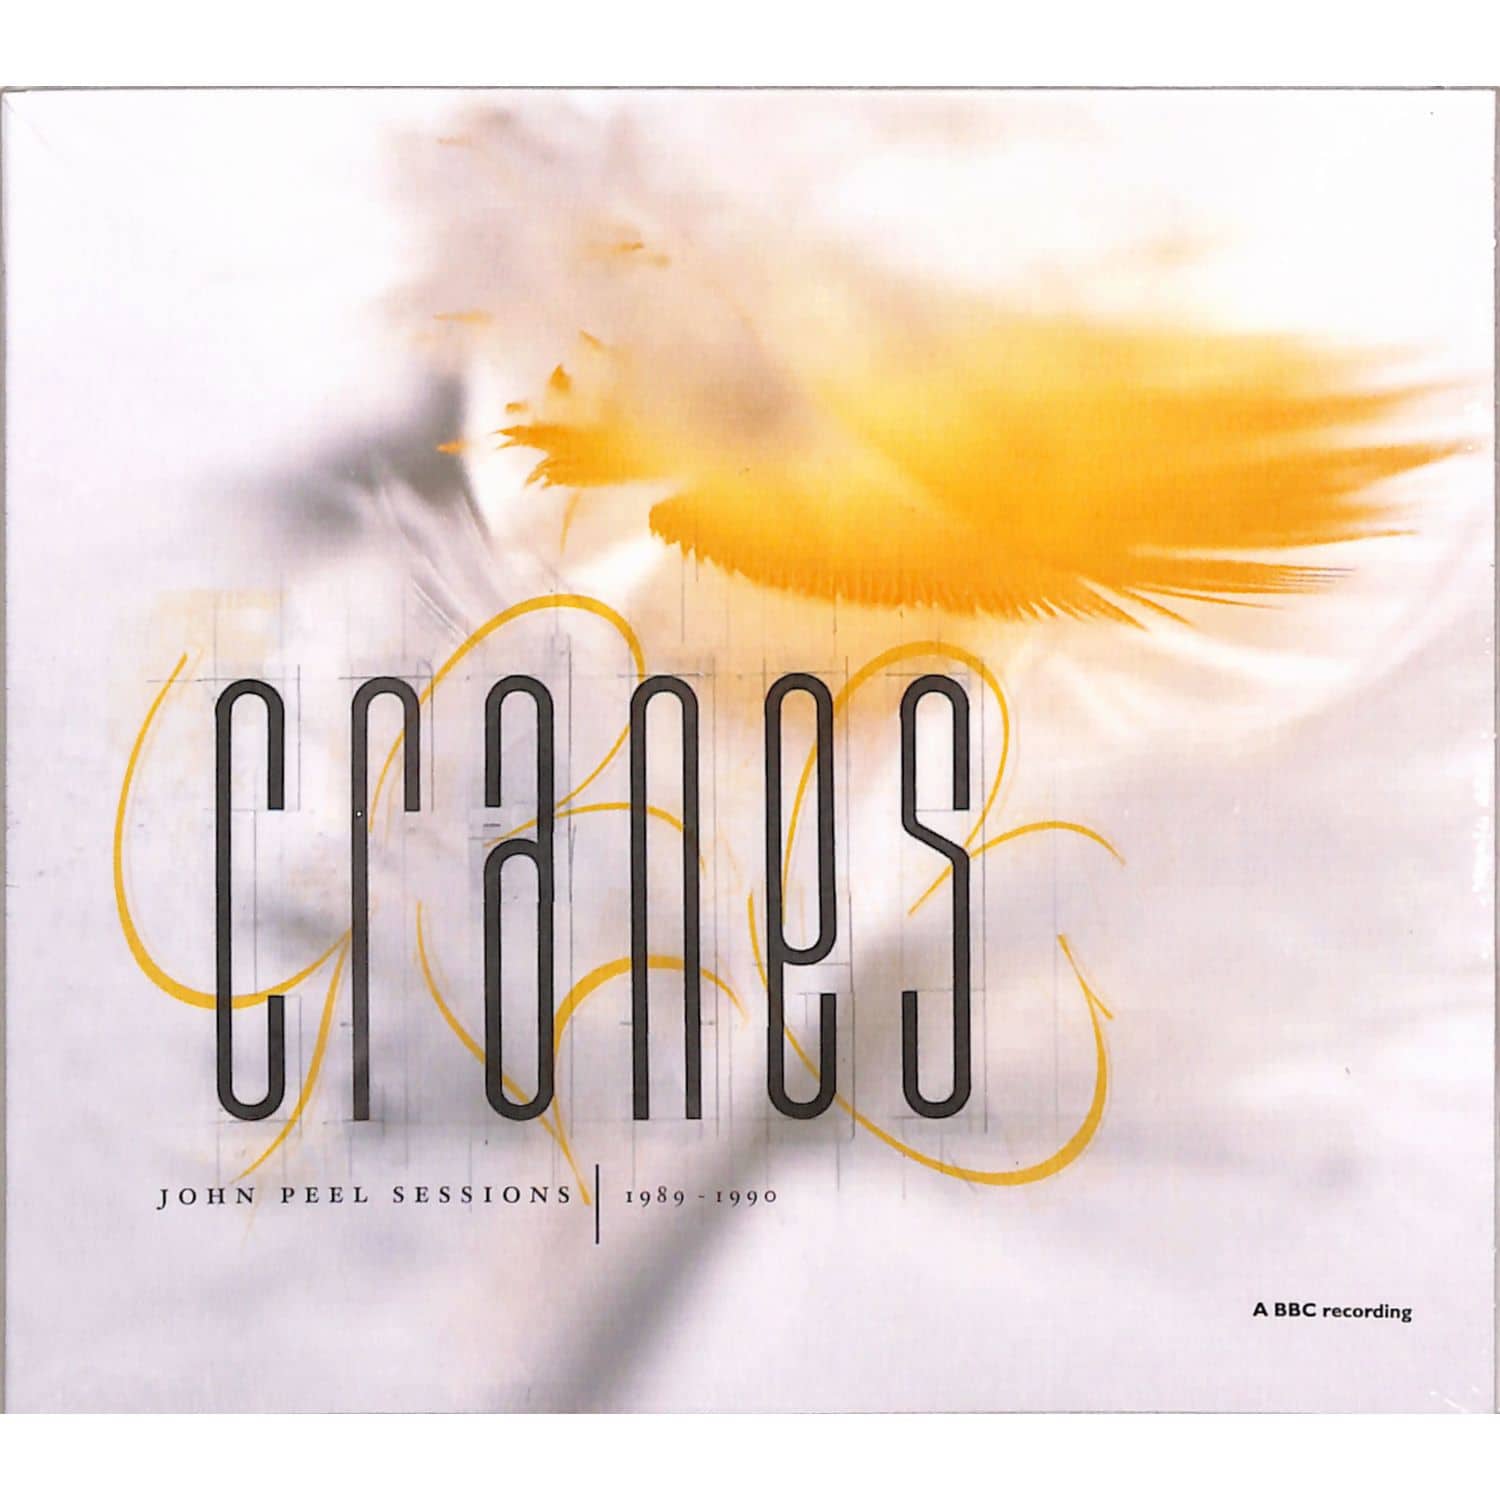 Cranes - JOHN PEEL SESSIONS 